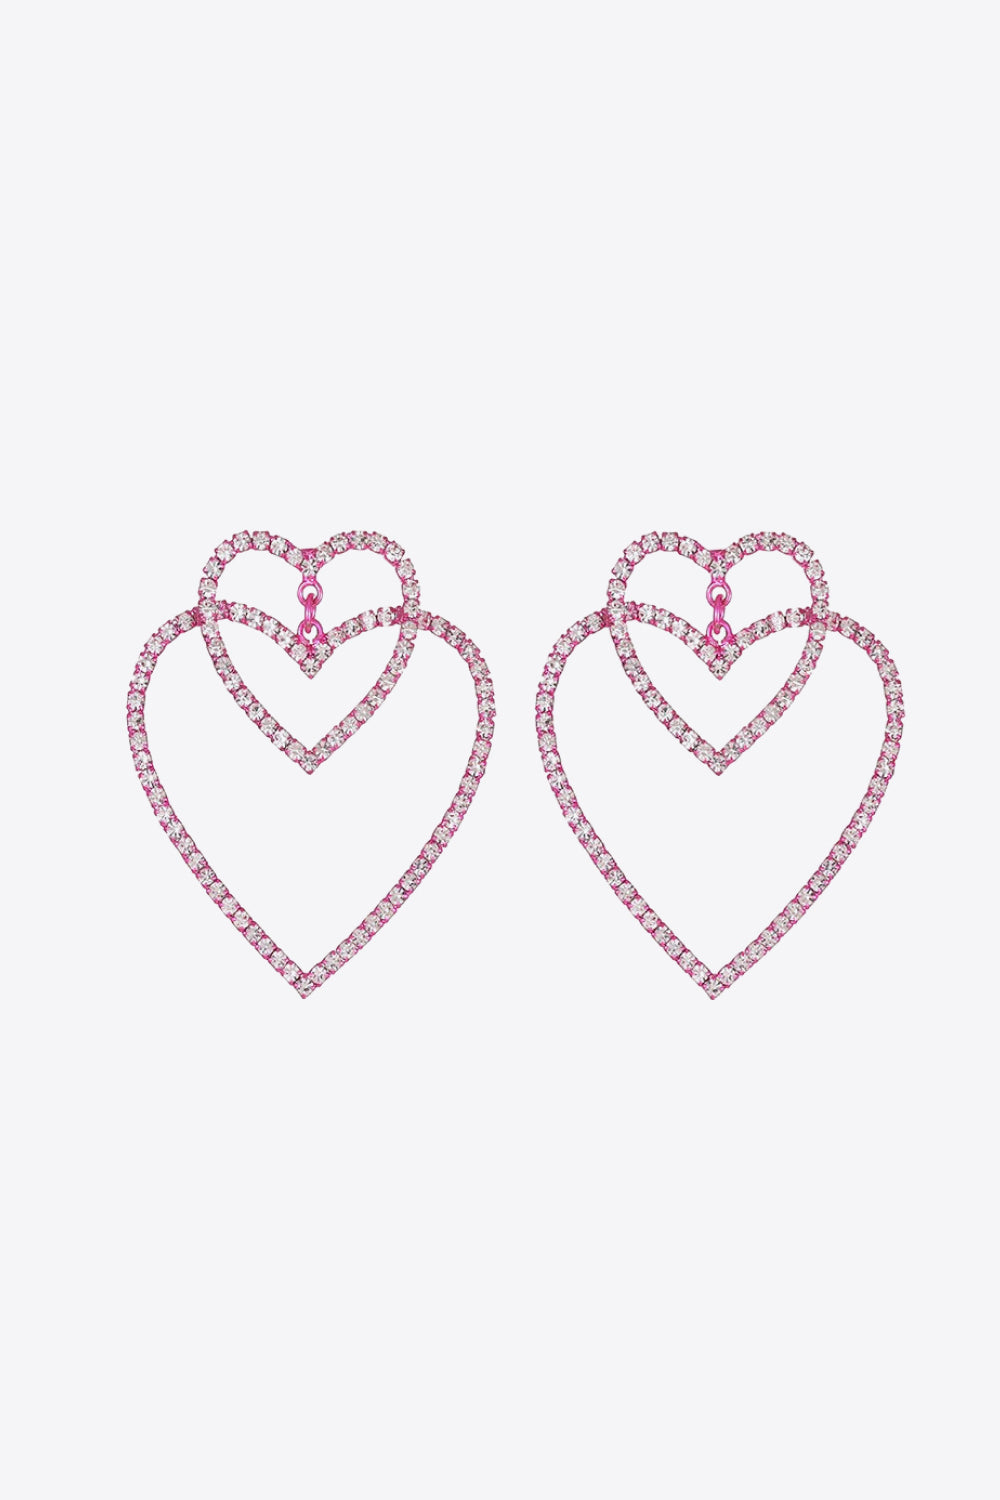 Love, Love These Heart Earrings